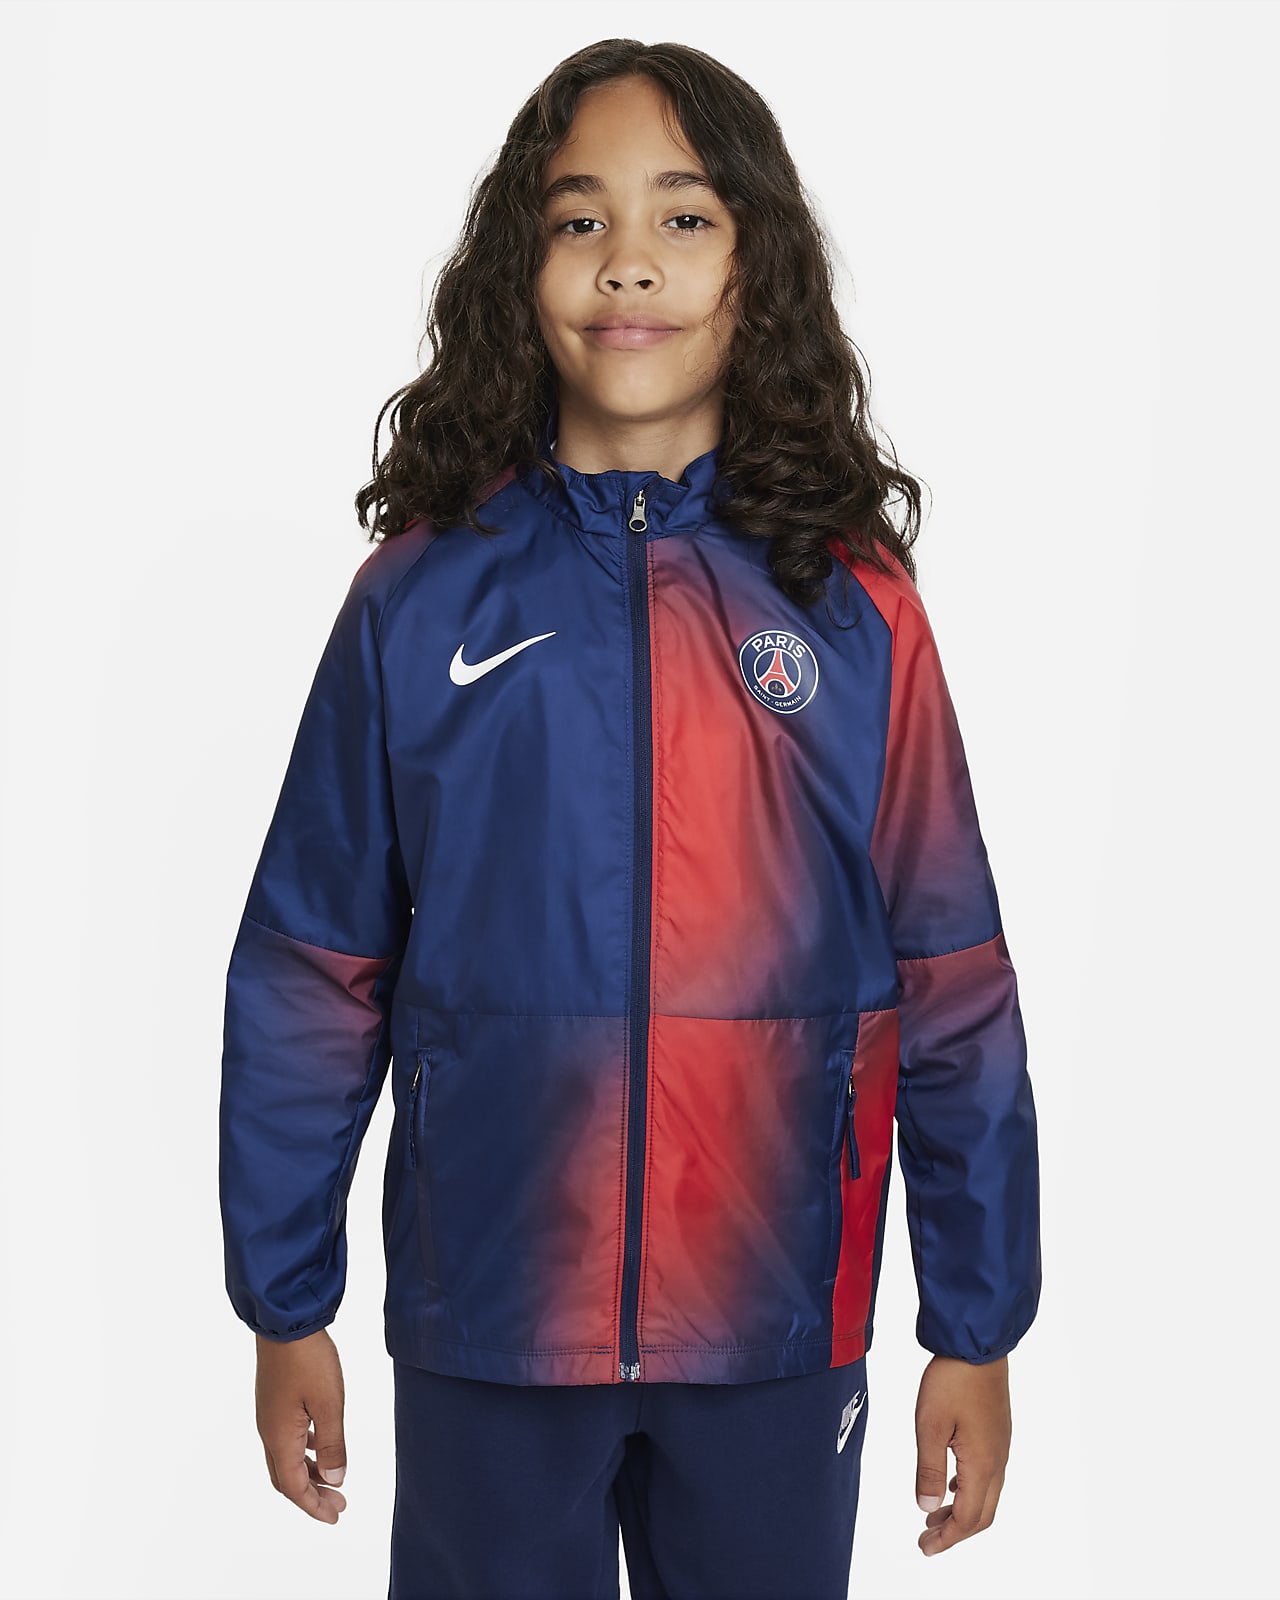 Paris Saint-Germain Repel Academy AWF Older Kids' Nike Football Jacket